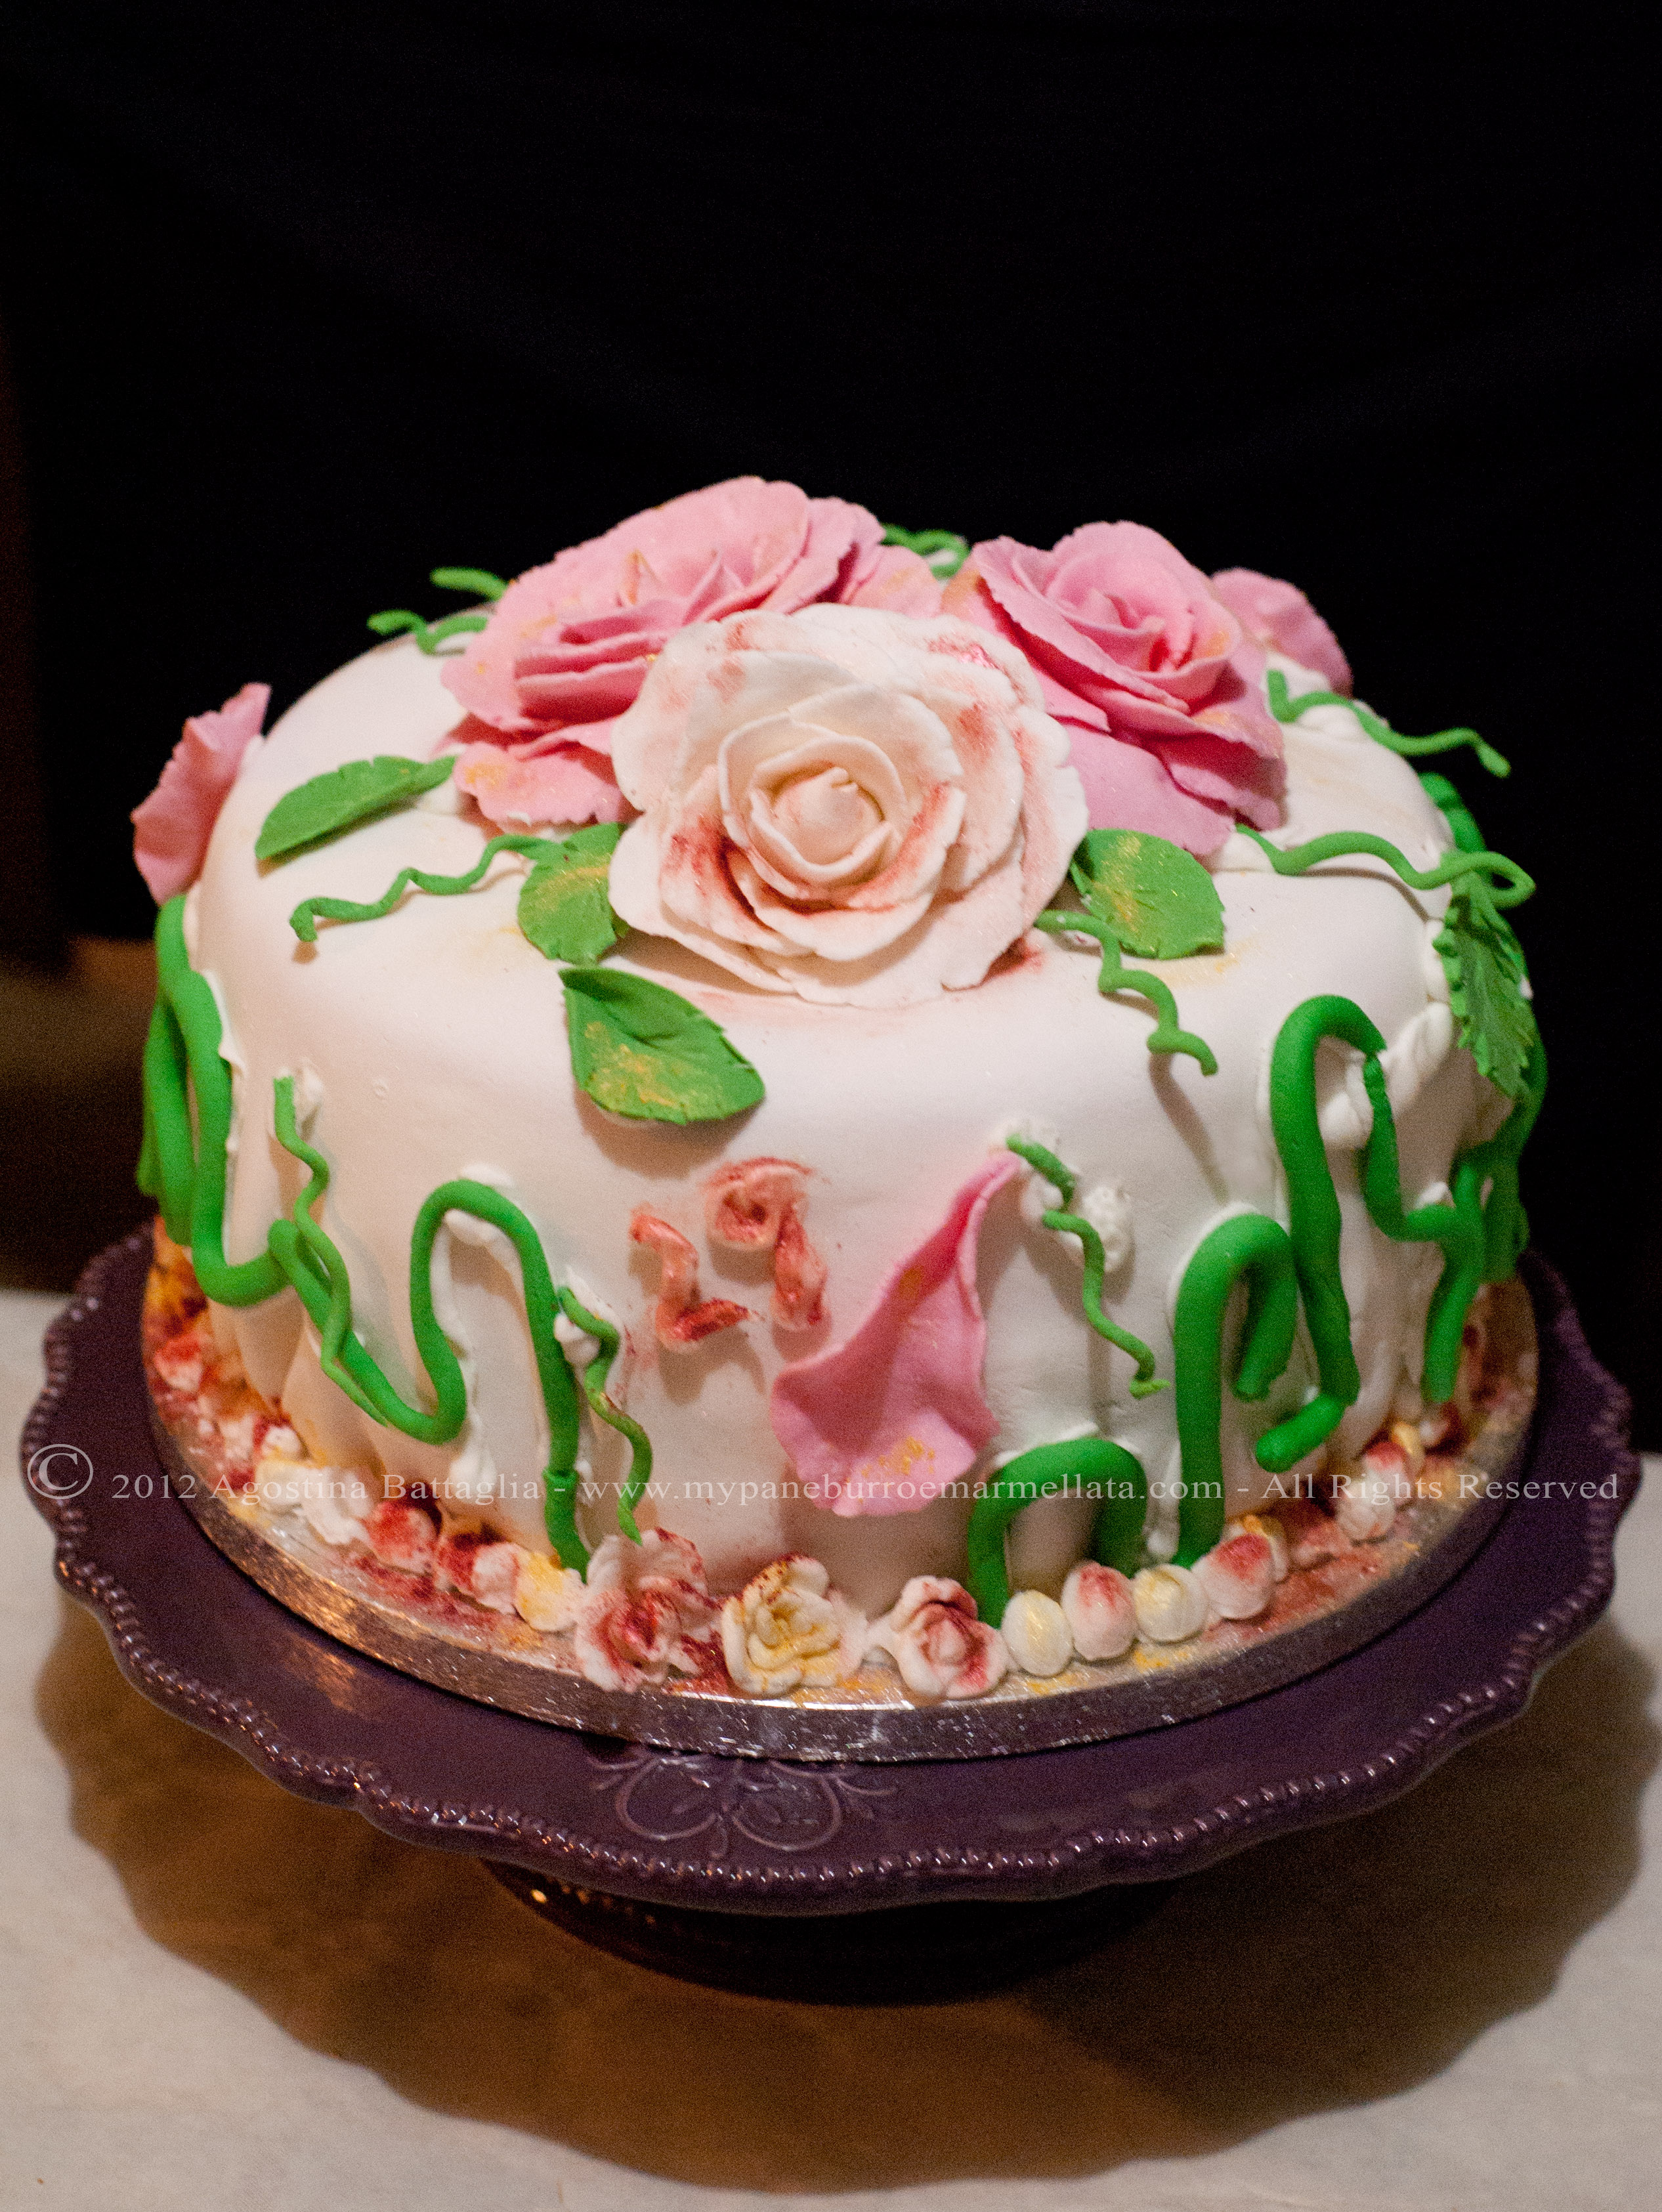 Rose di Pasta di Zucchero + Rainbow Cake = Una Torta delicata dall'Anima  colorata - Pane, burro e marmellata